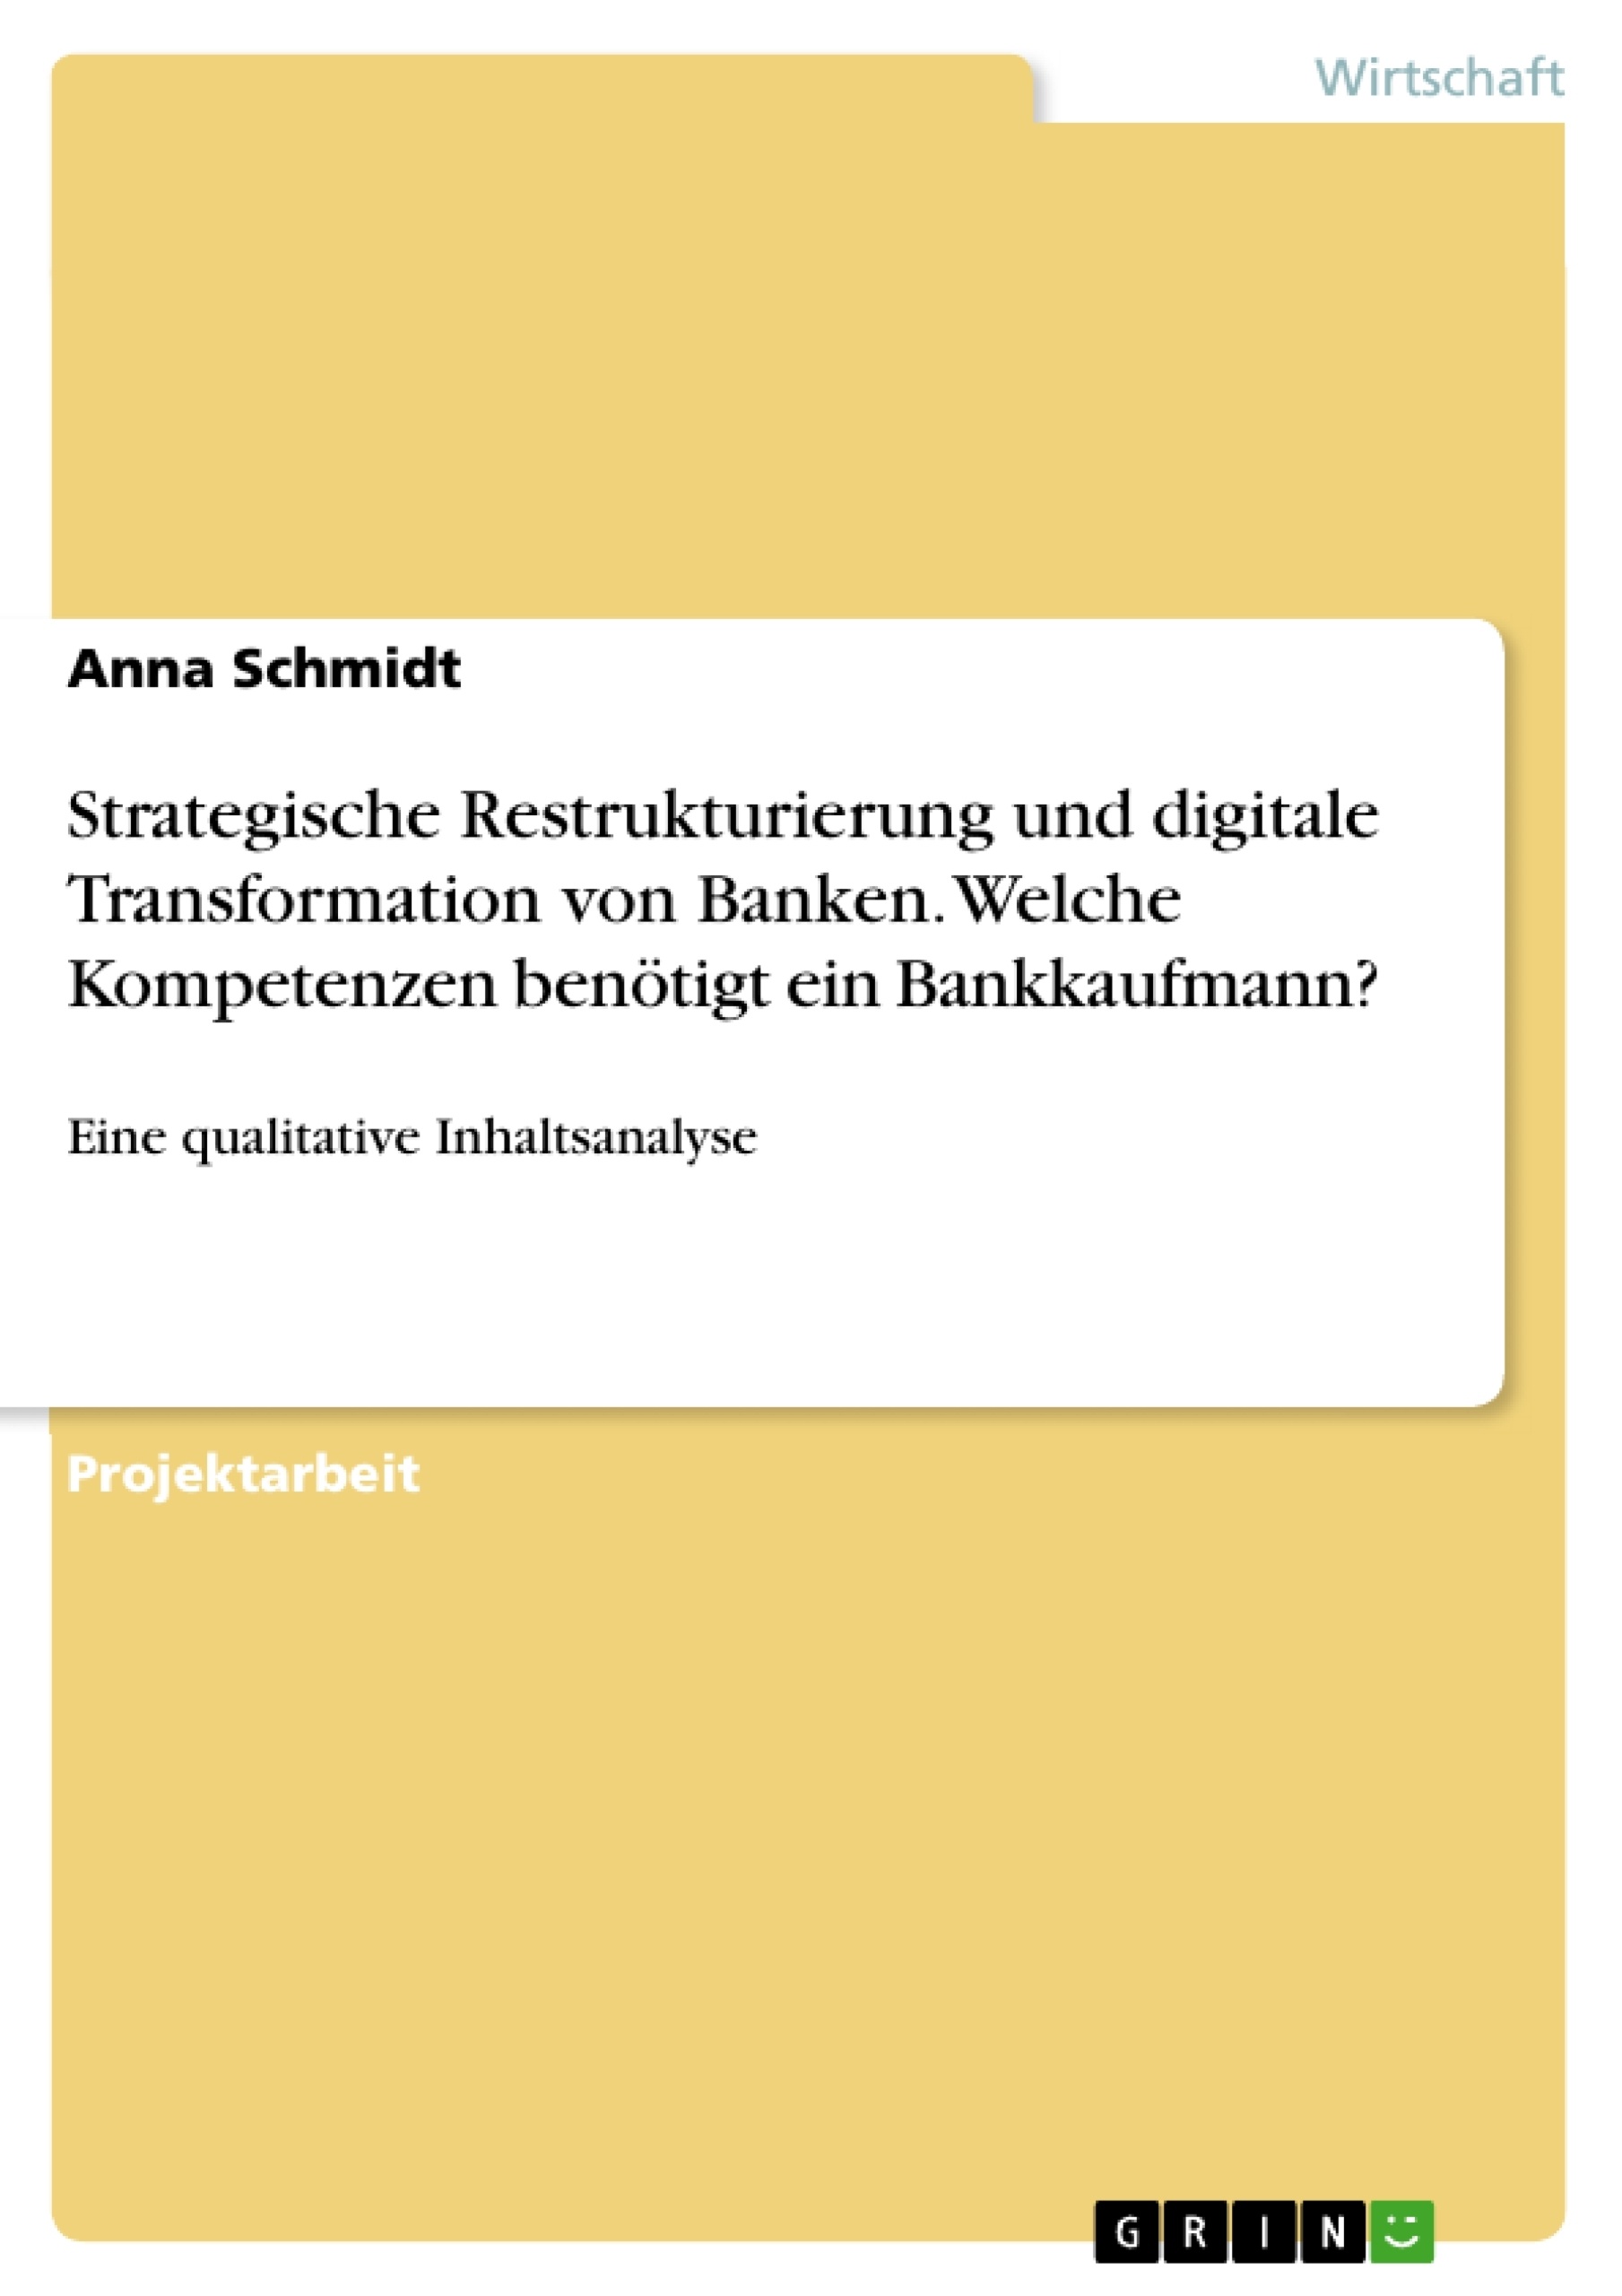 Titel: Strategische Restrukturierung und digitale Transformation von Banken. Welche Kompetenzen benötigt ein Bankkaufmann?